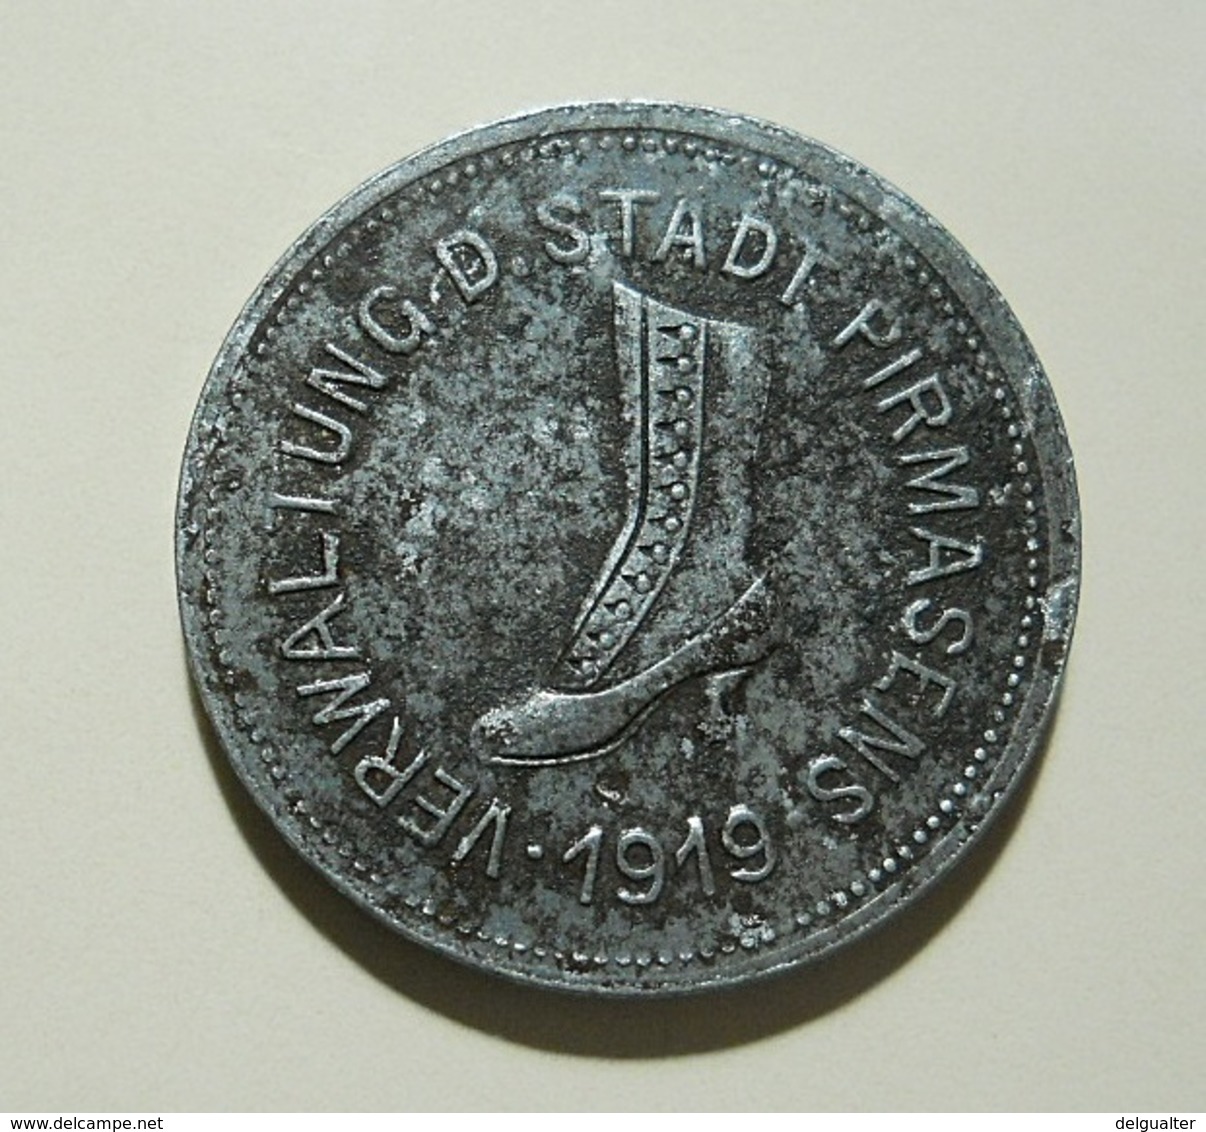 Coin Or Token * Verwaltung. D. Stadt Pirmasens * 10 Klein Geldersatz Marke * 1919 - Unknown Origin